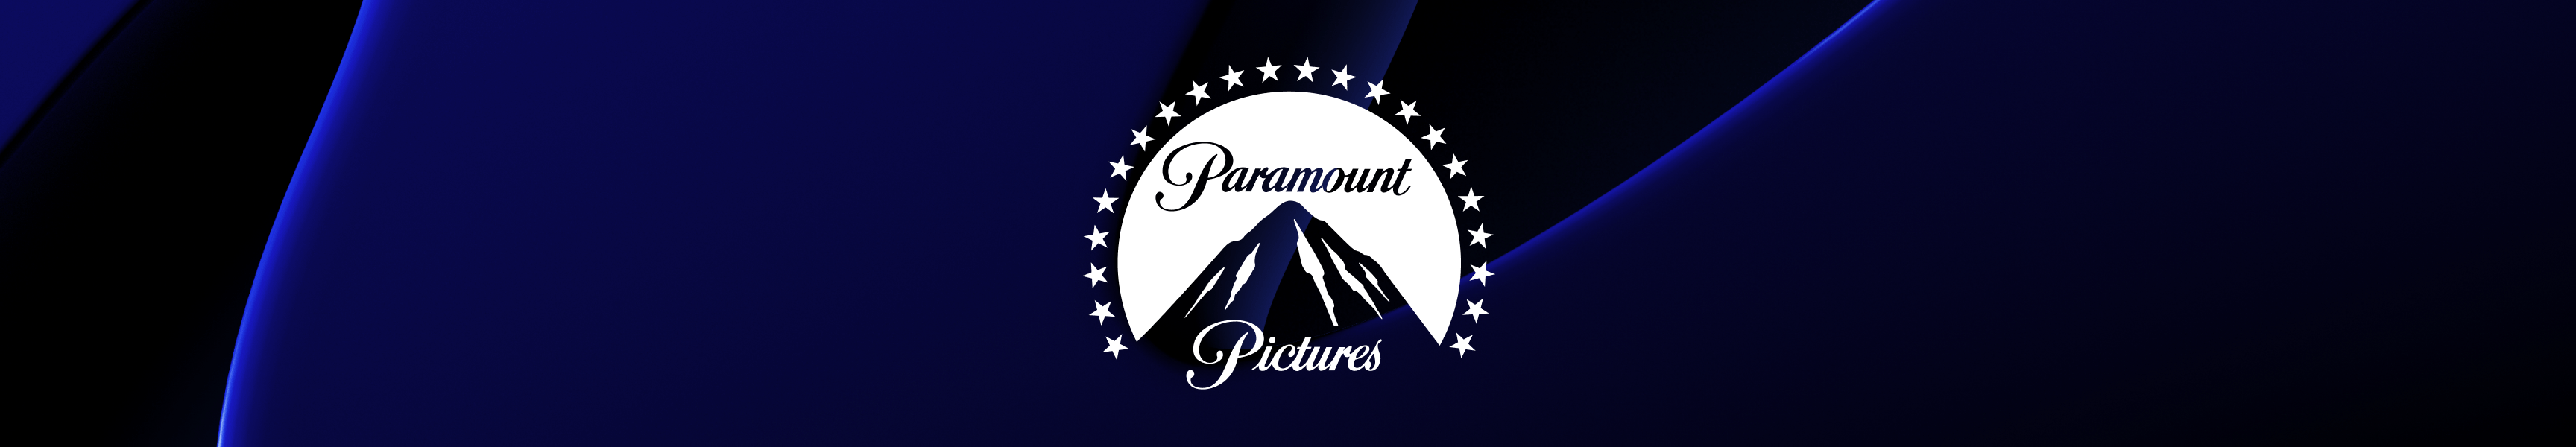 Paramount Pictures Tazas y botellas